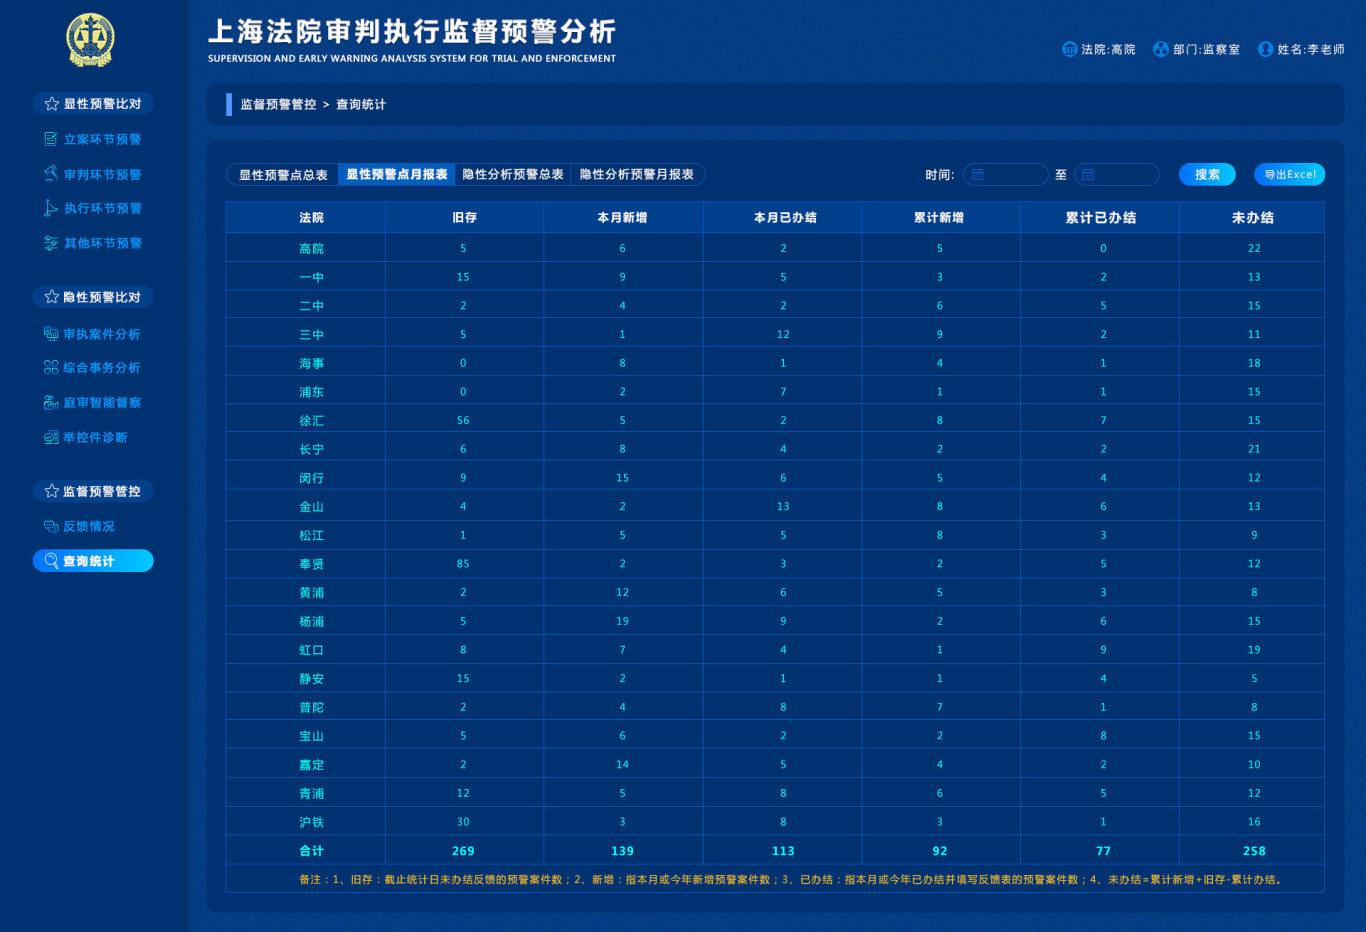 上海法院审判执行监督预警分析图24